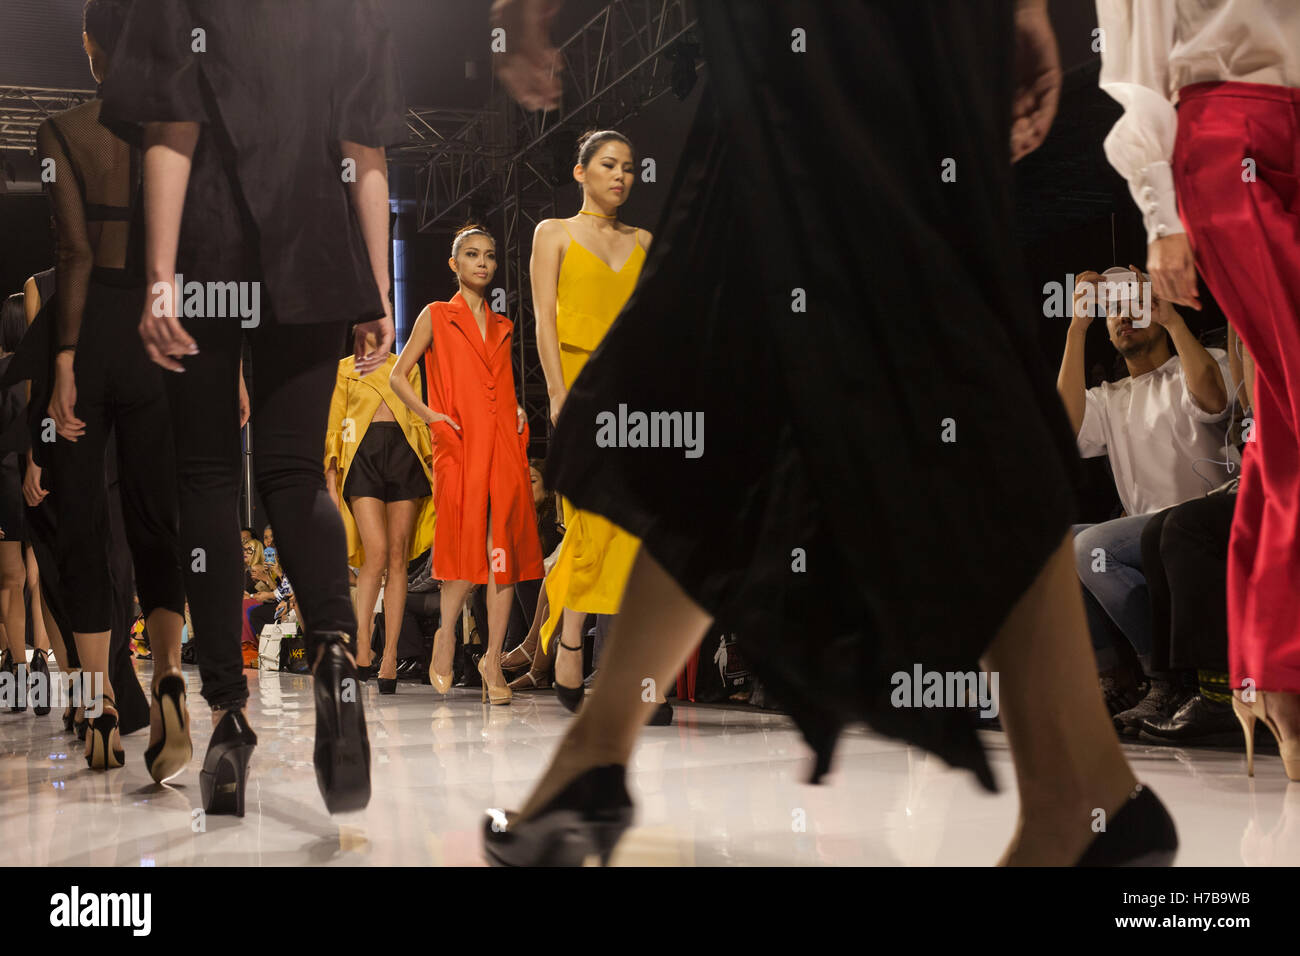 Kuala Lumpur, Malaisie. 3 novembre, 2016. Marche des modèles sur la piste pendant le lancement d'une collection de mode à la Fashion Week de la Malaisie à Kuala Lumpur, Malaisie. Alexandra Radu/Alamy Live News Banque D'Images